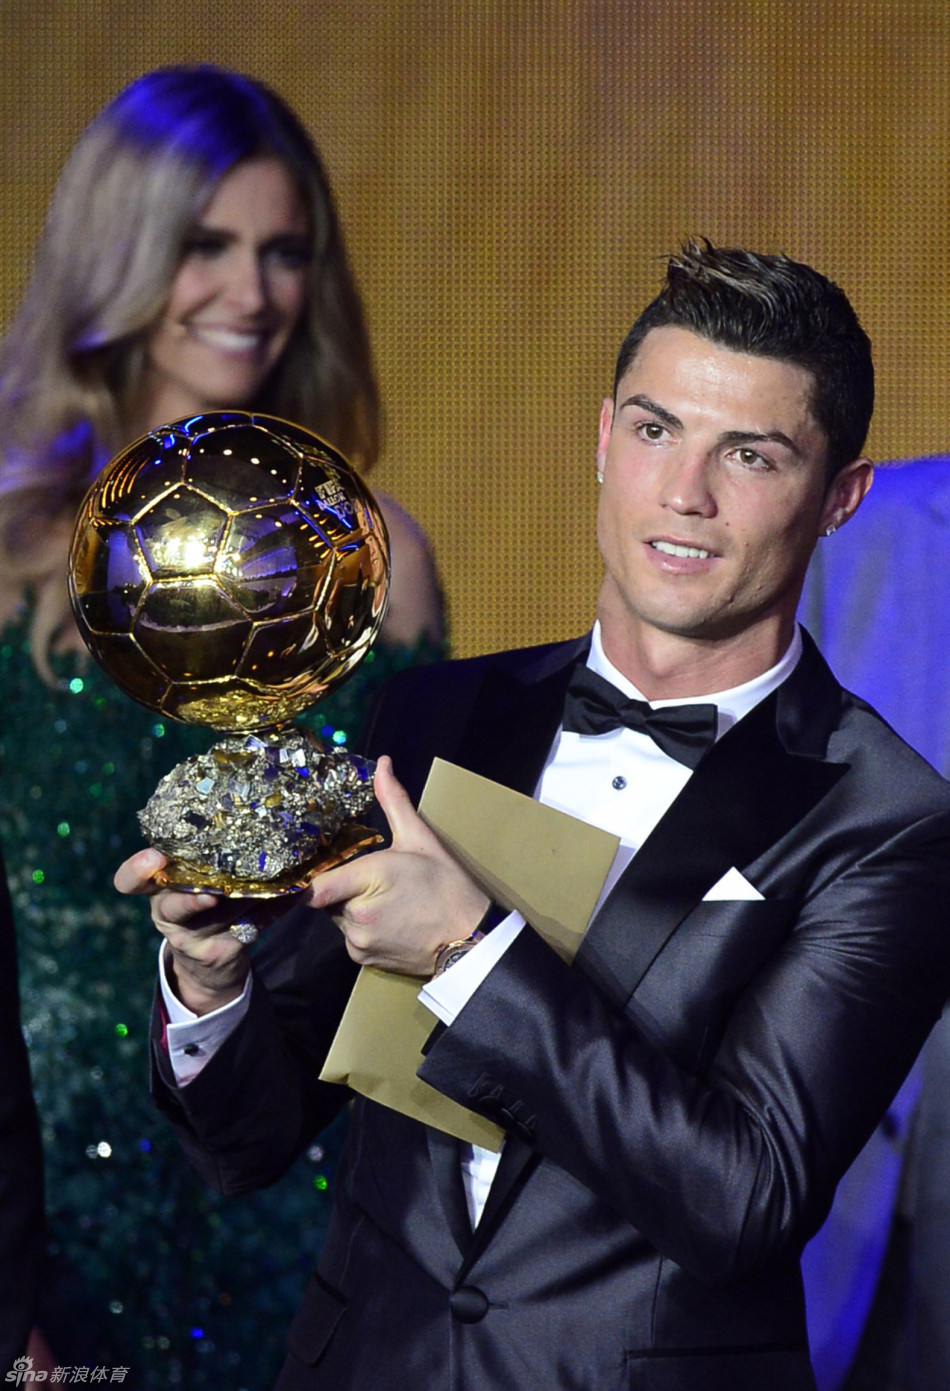 اللاعب البرتغالي كريستيانو رونالدو يحصل على جائزة الكرة الذهبية لعام 2013 (4)